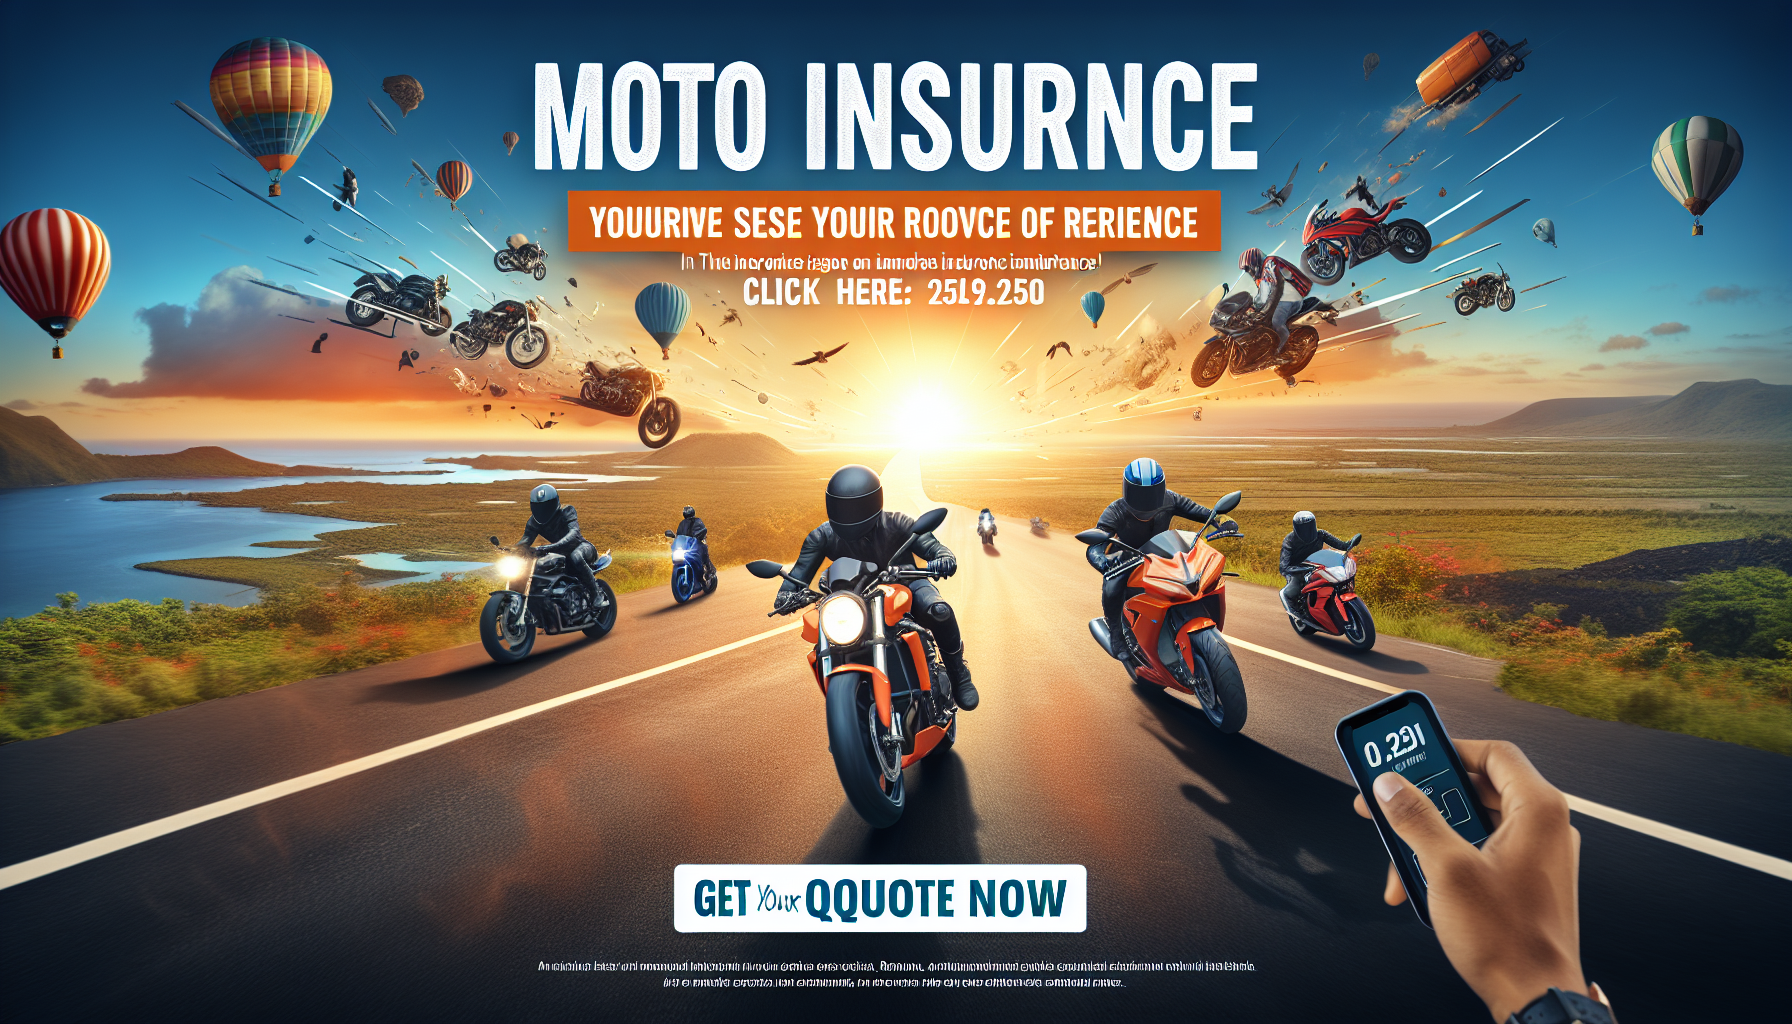 obtenez un devis pour une assurance moto à la réunion. protégez votre moto avec notre assurance moto adaptée à la réunion.